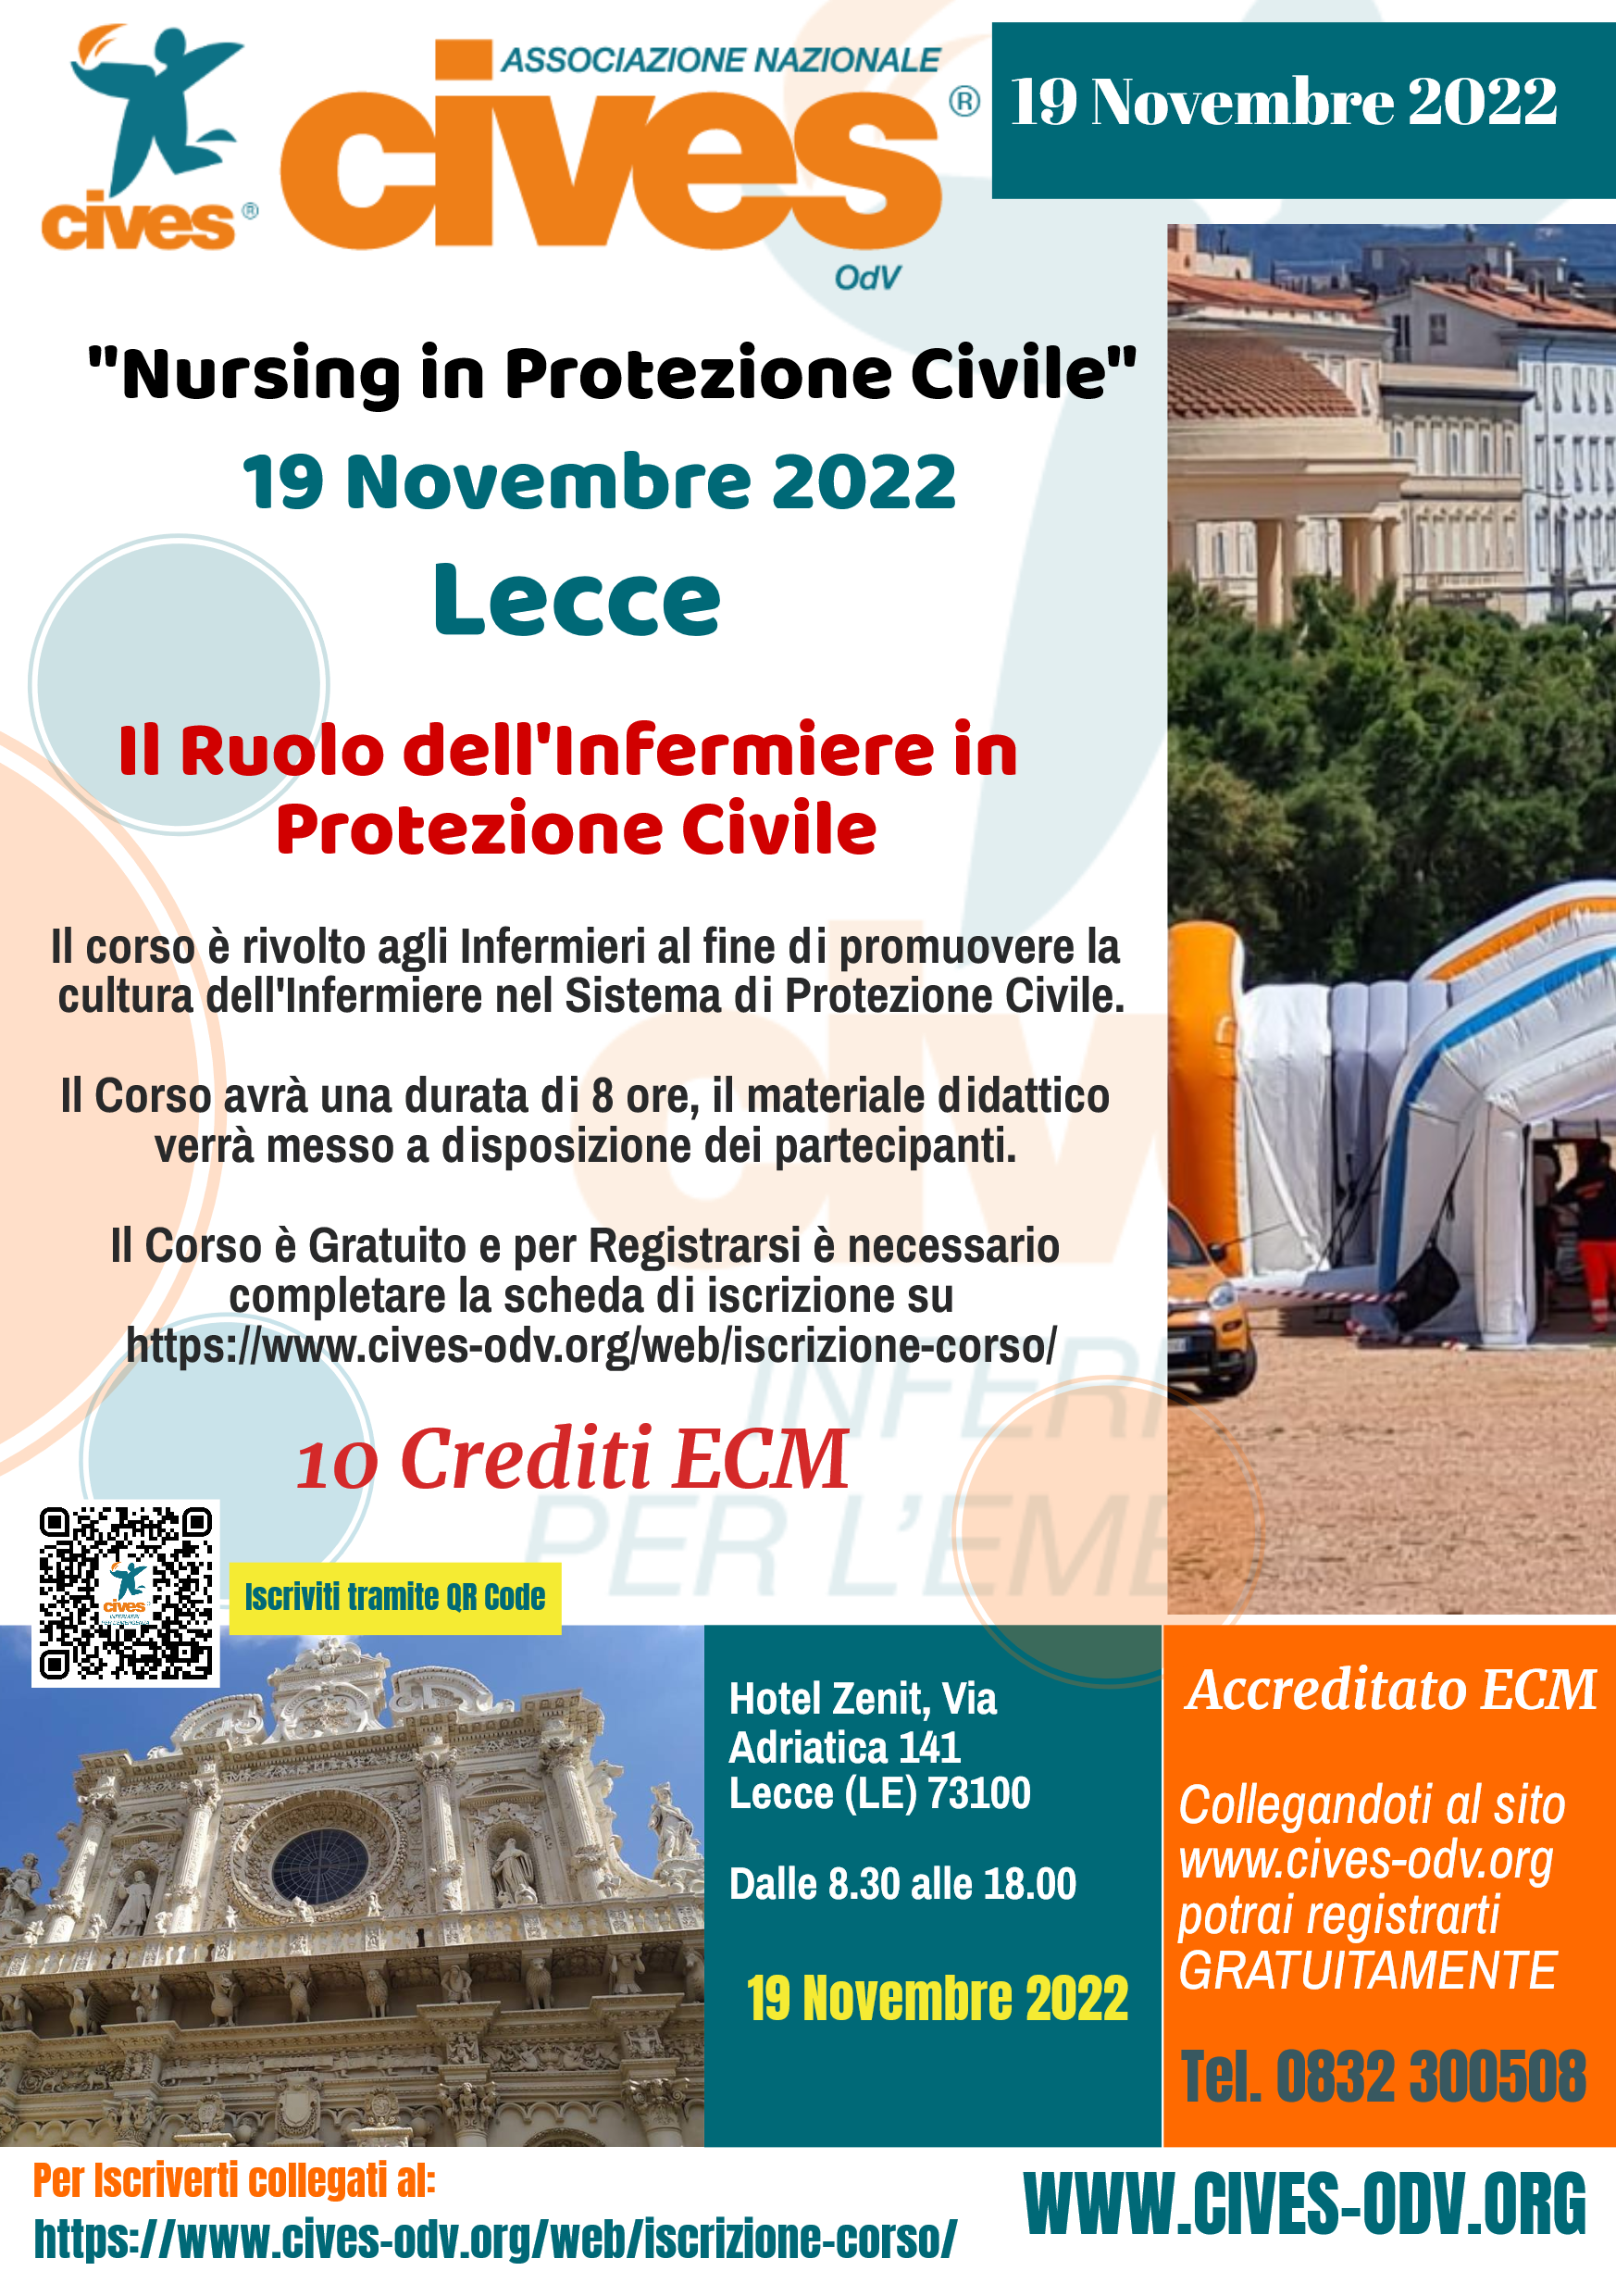 CIVES LECCE: Edizione del Convegno “Nursing in Protezione Civile”